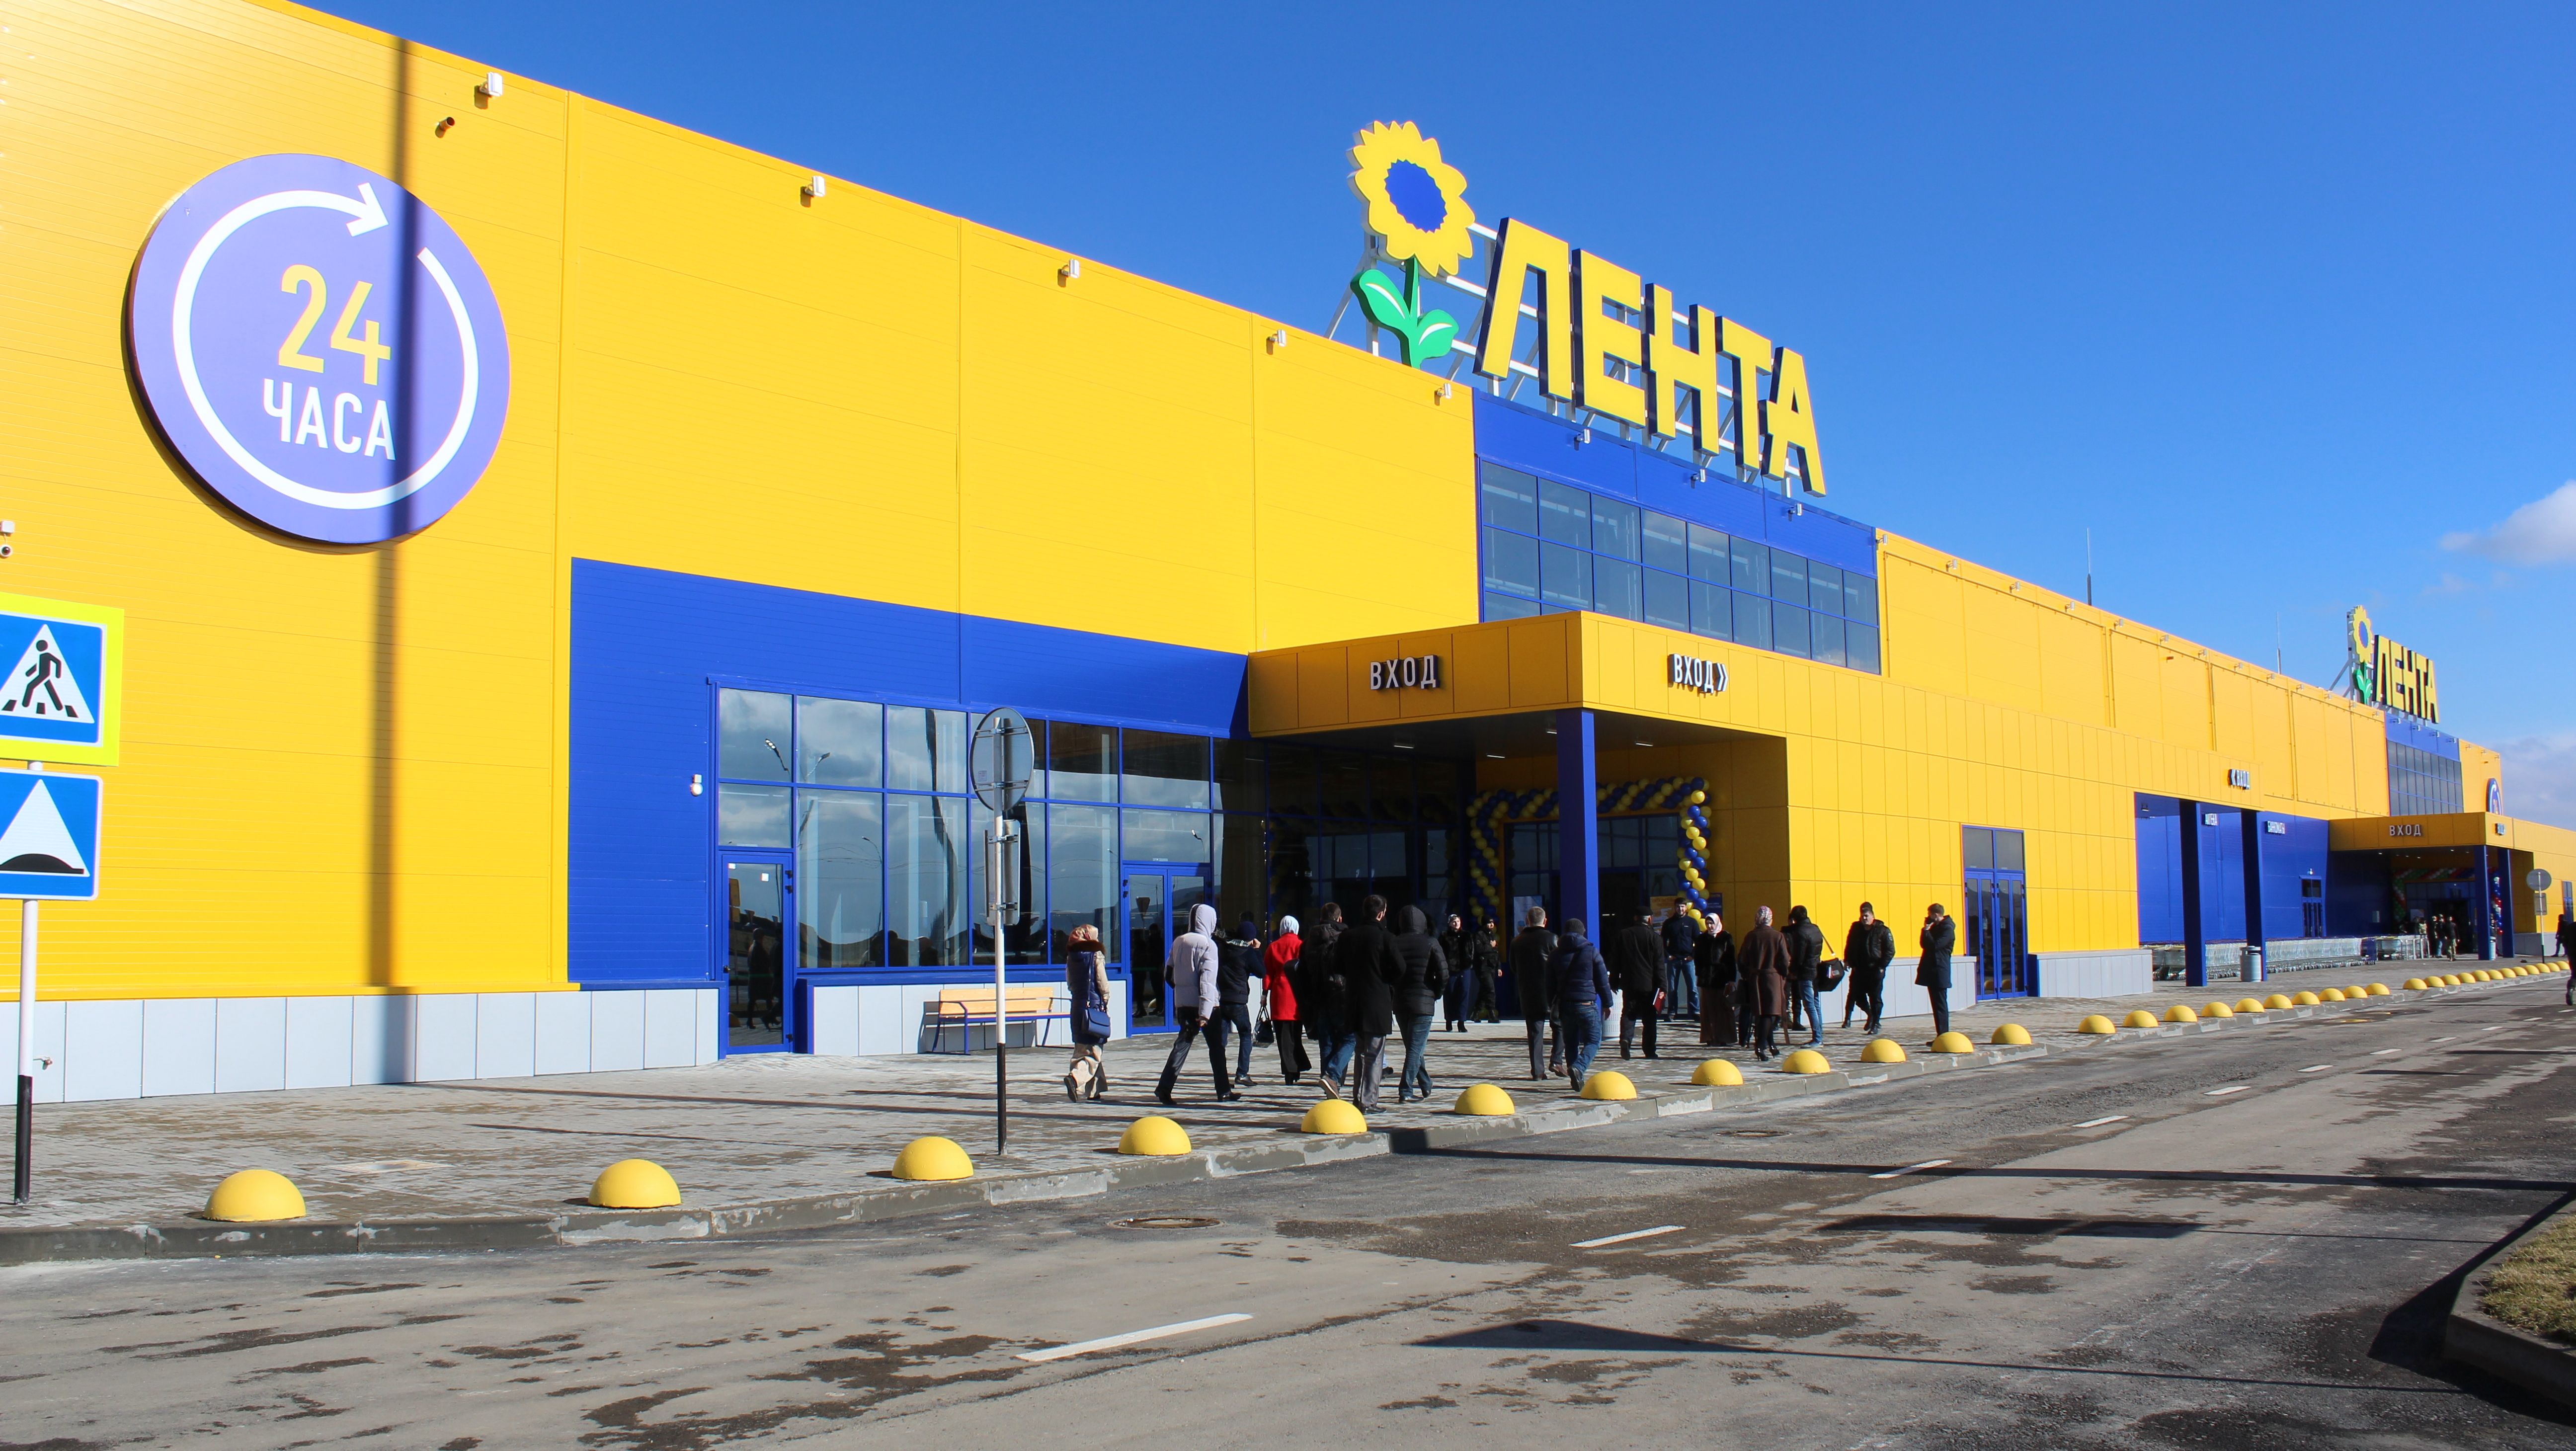 «Лента» открыла в Екатеринбурге три супермаркета, до конца года откроет еще столько же. Адреса